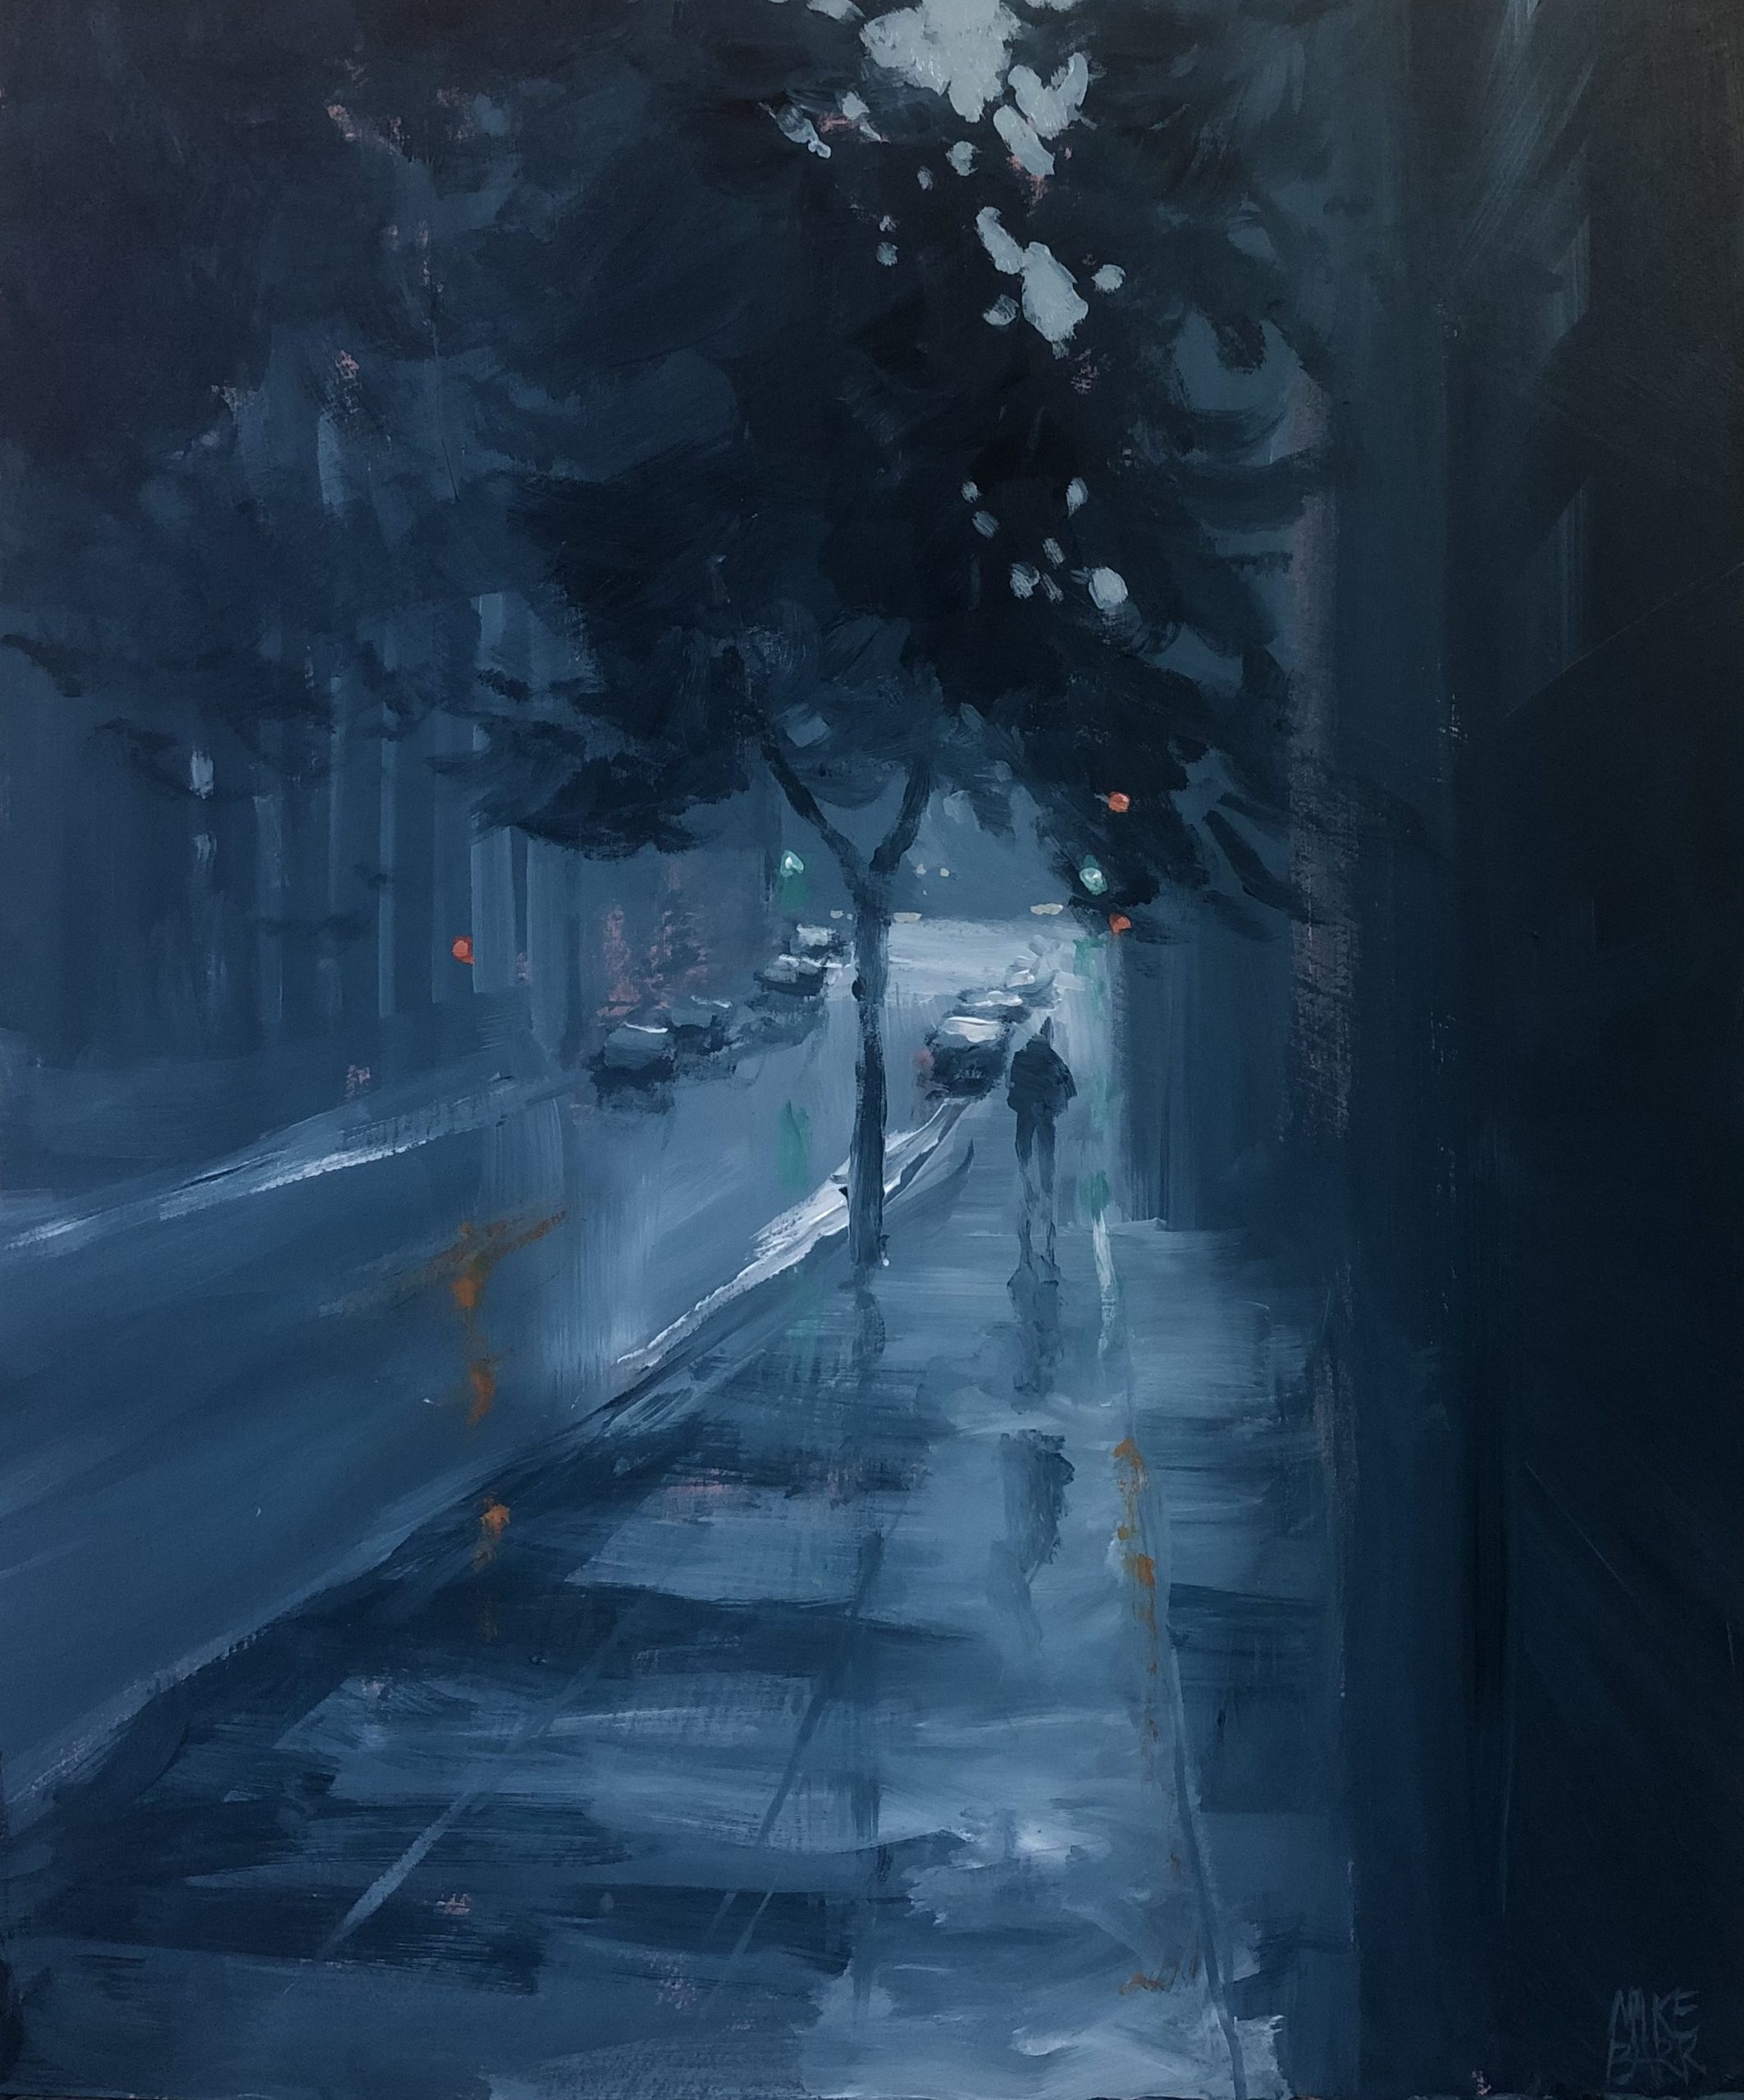 Flinders Lane in Rain by Mike Barr